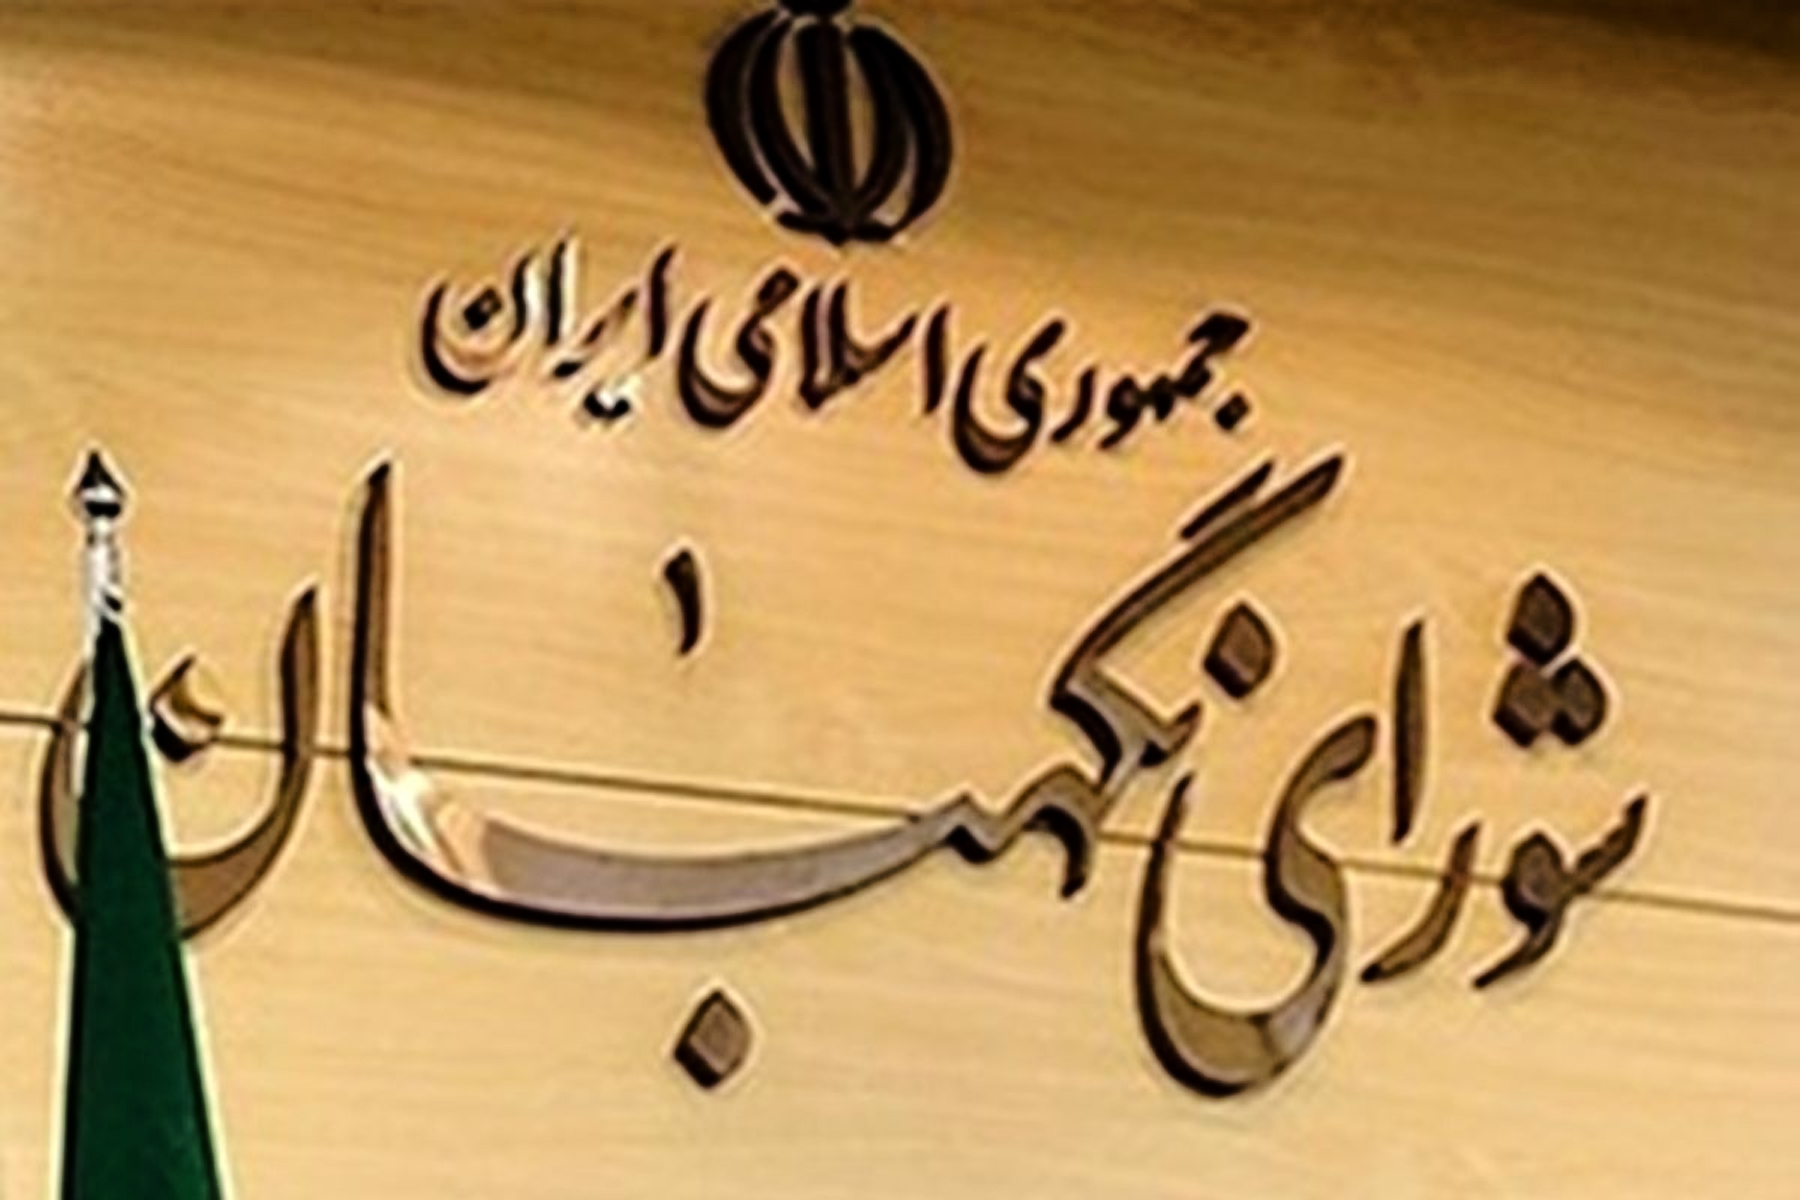 جمهوری اسلامی در تلاش برای کشاندن مردم به پای صندوق های رأی در انتخابات ۱۴۰۰